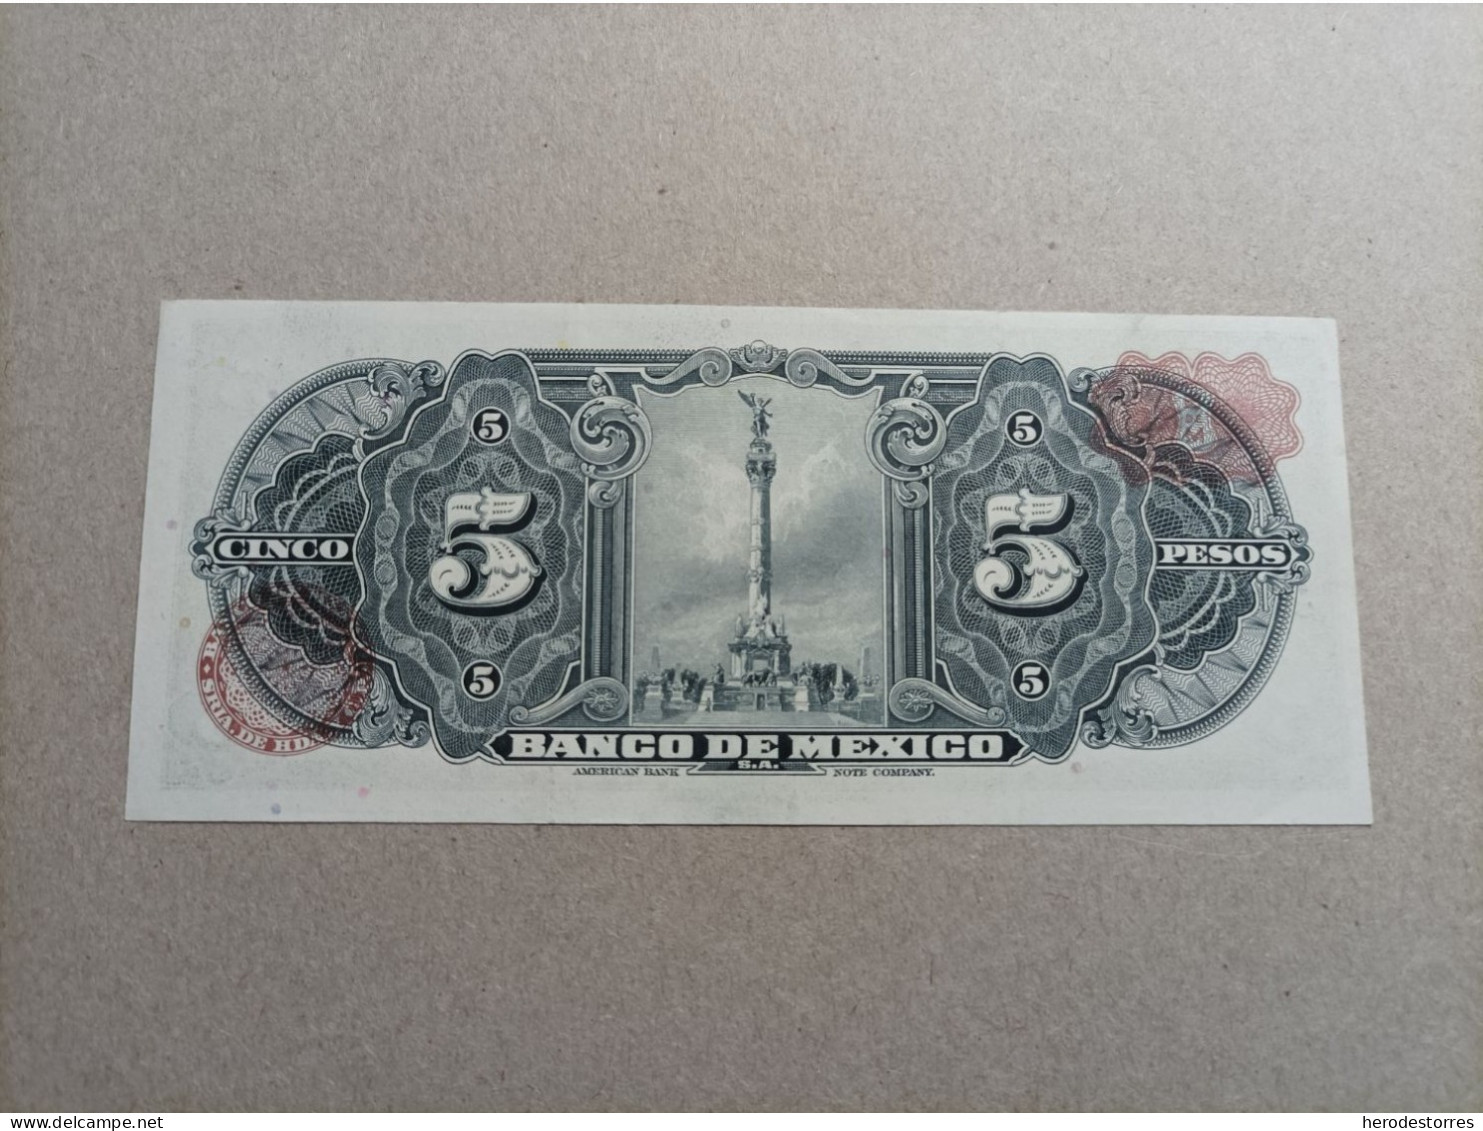 Billete De México 5 Pesos Del Año 1961, UNC - Mexico